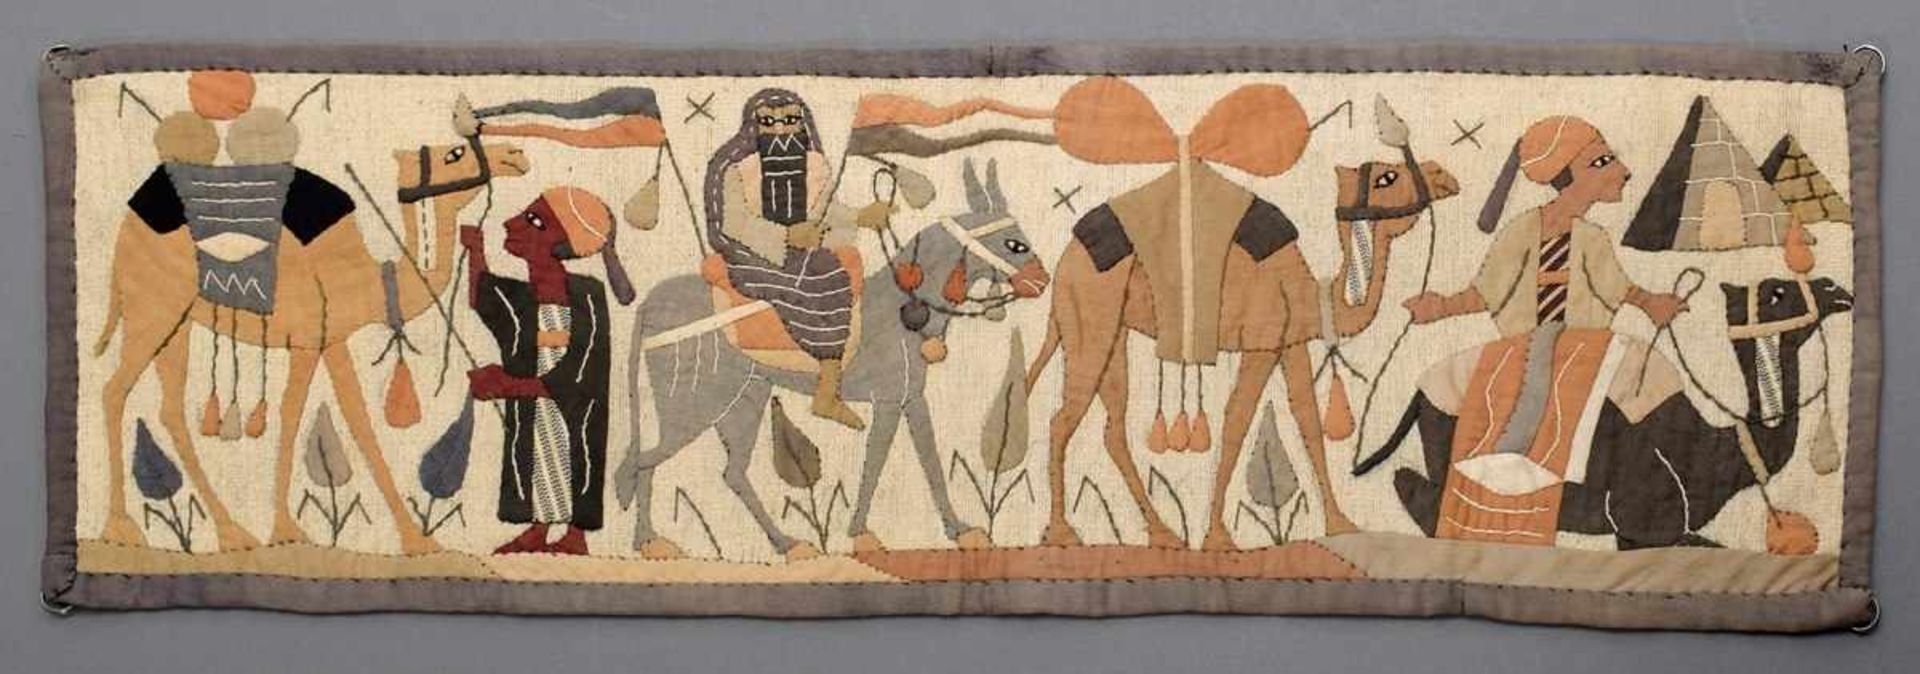 Ägyptischer Textil Wandbehang "Karawane", Baumwolle, um 1920, 23x73cm, etwas ausgeblichenEgyptian